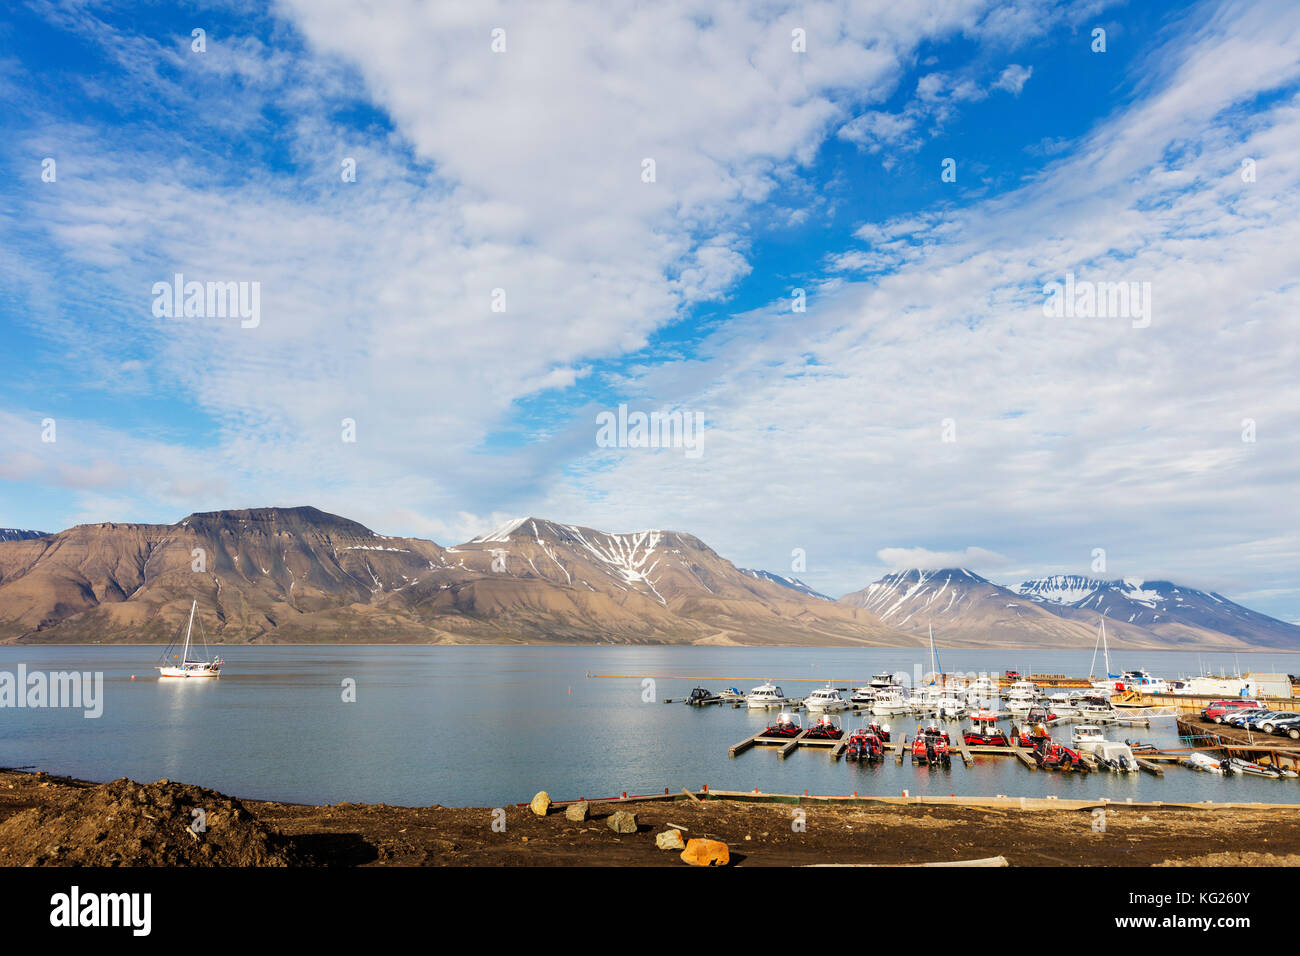 Le port de Longyearbyen, Spitsbergen, Svalbard, Norvège, Europe, de l'Arctique Banque D'Images